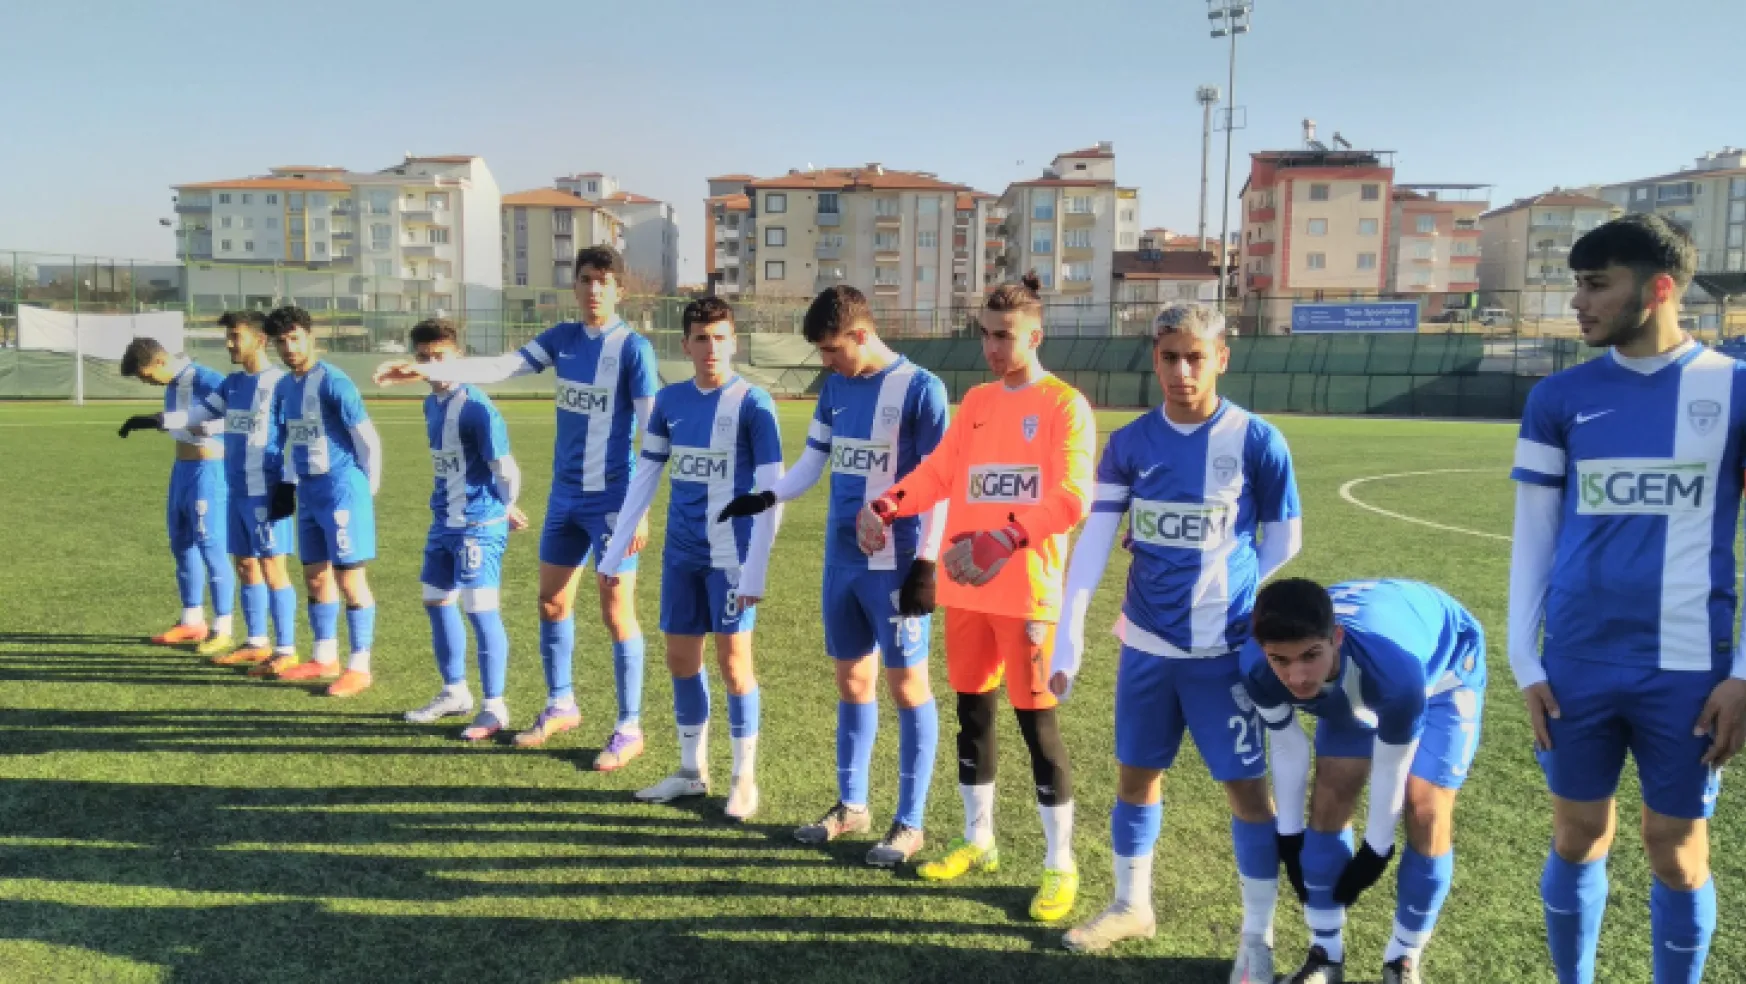 Malatya 1. amatör küme futbol ligi 5. Hafta karşılaşmaları oynandı